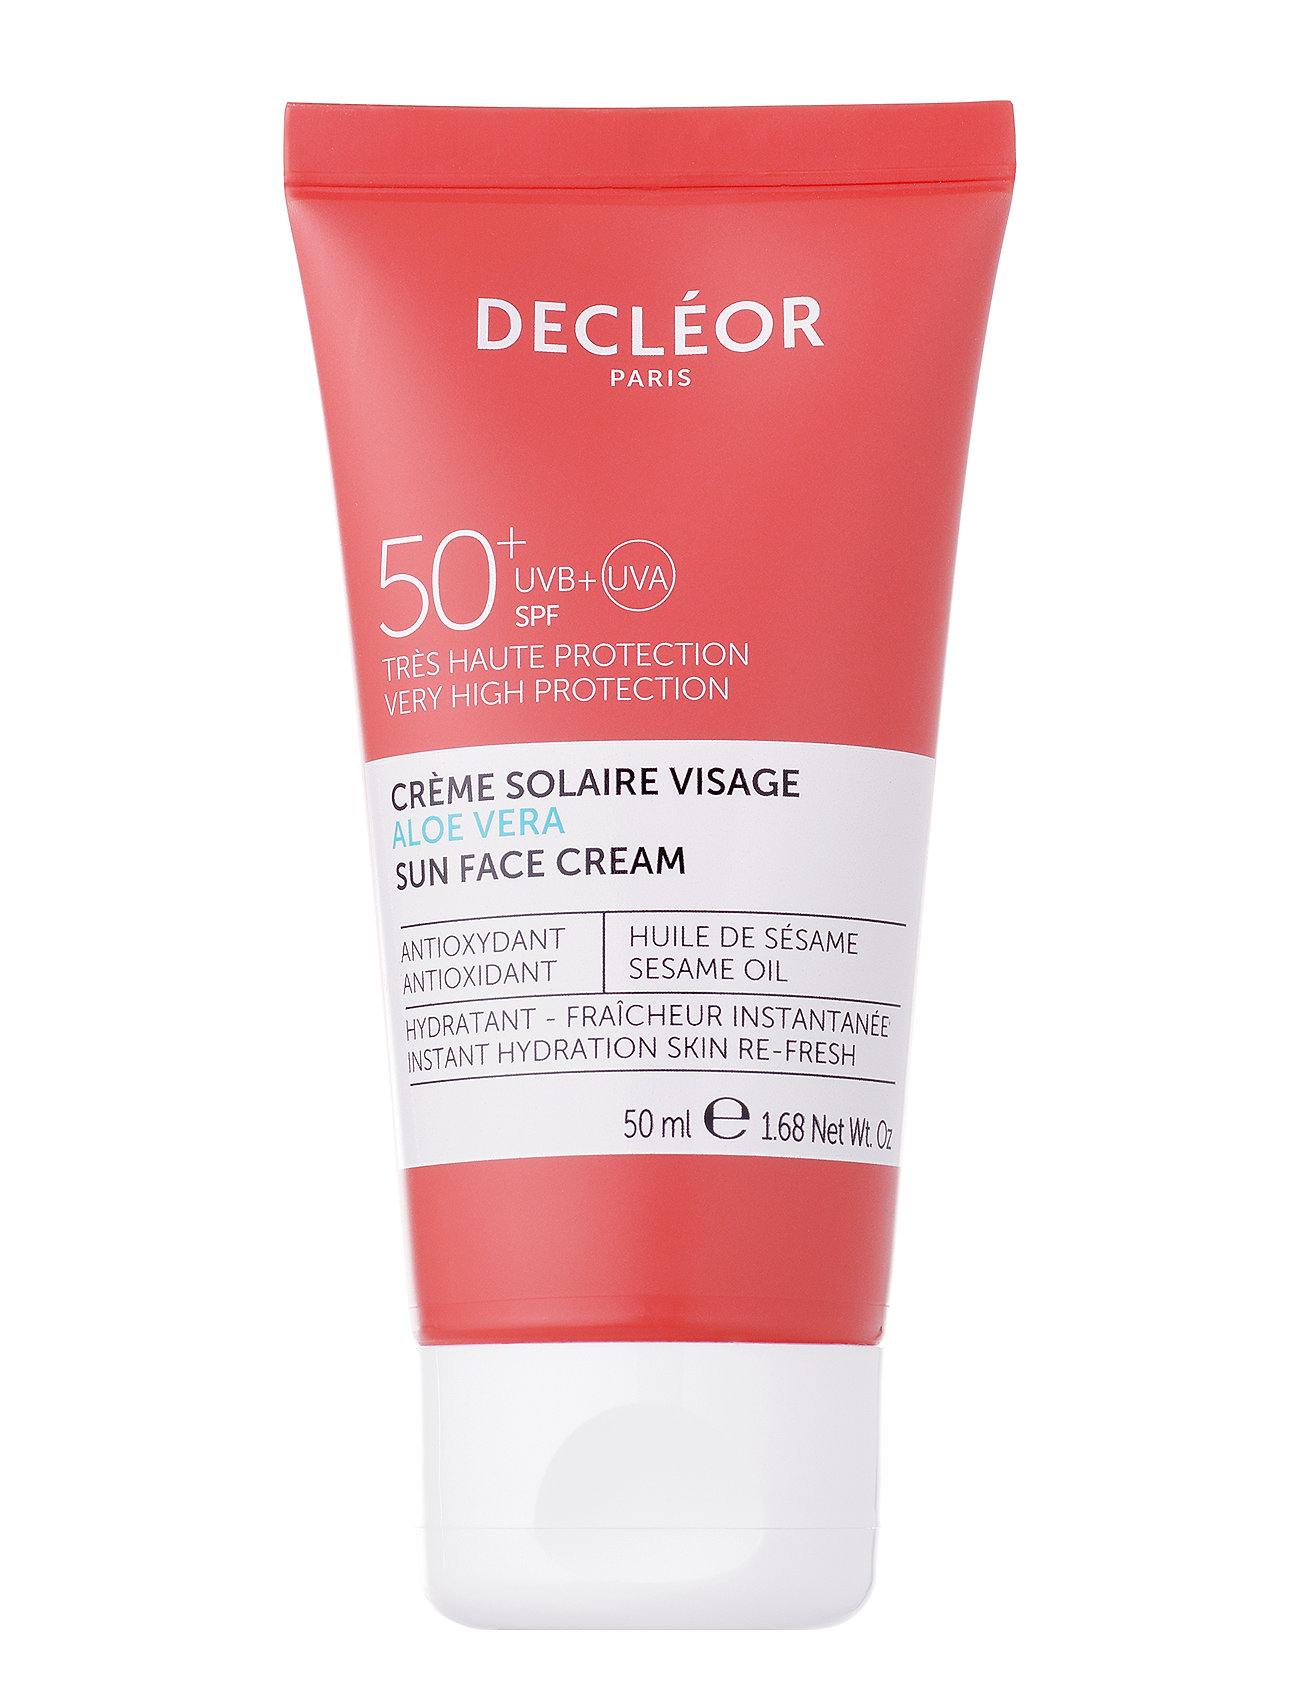 Aloe Vera Sun Face Cream Spf 50+ Beauty MEN Skin Care Sun Products Face Nude Decléor